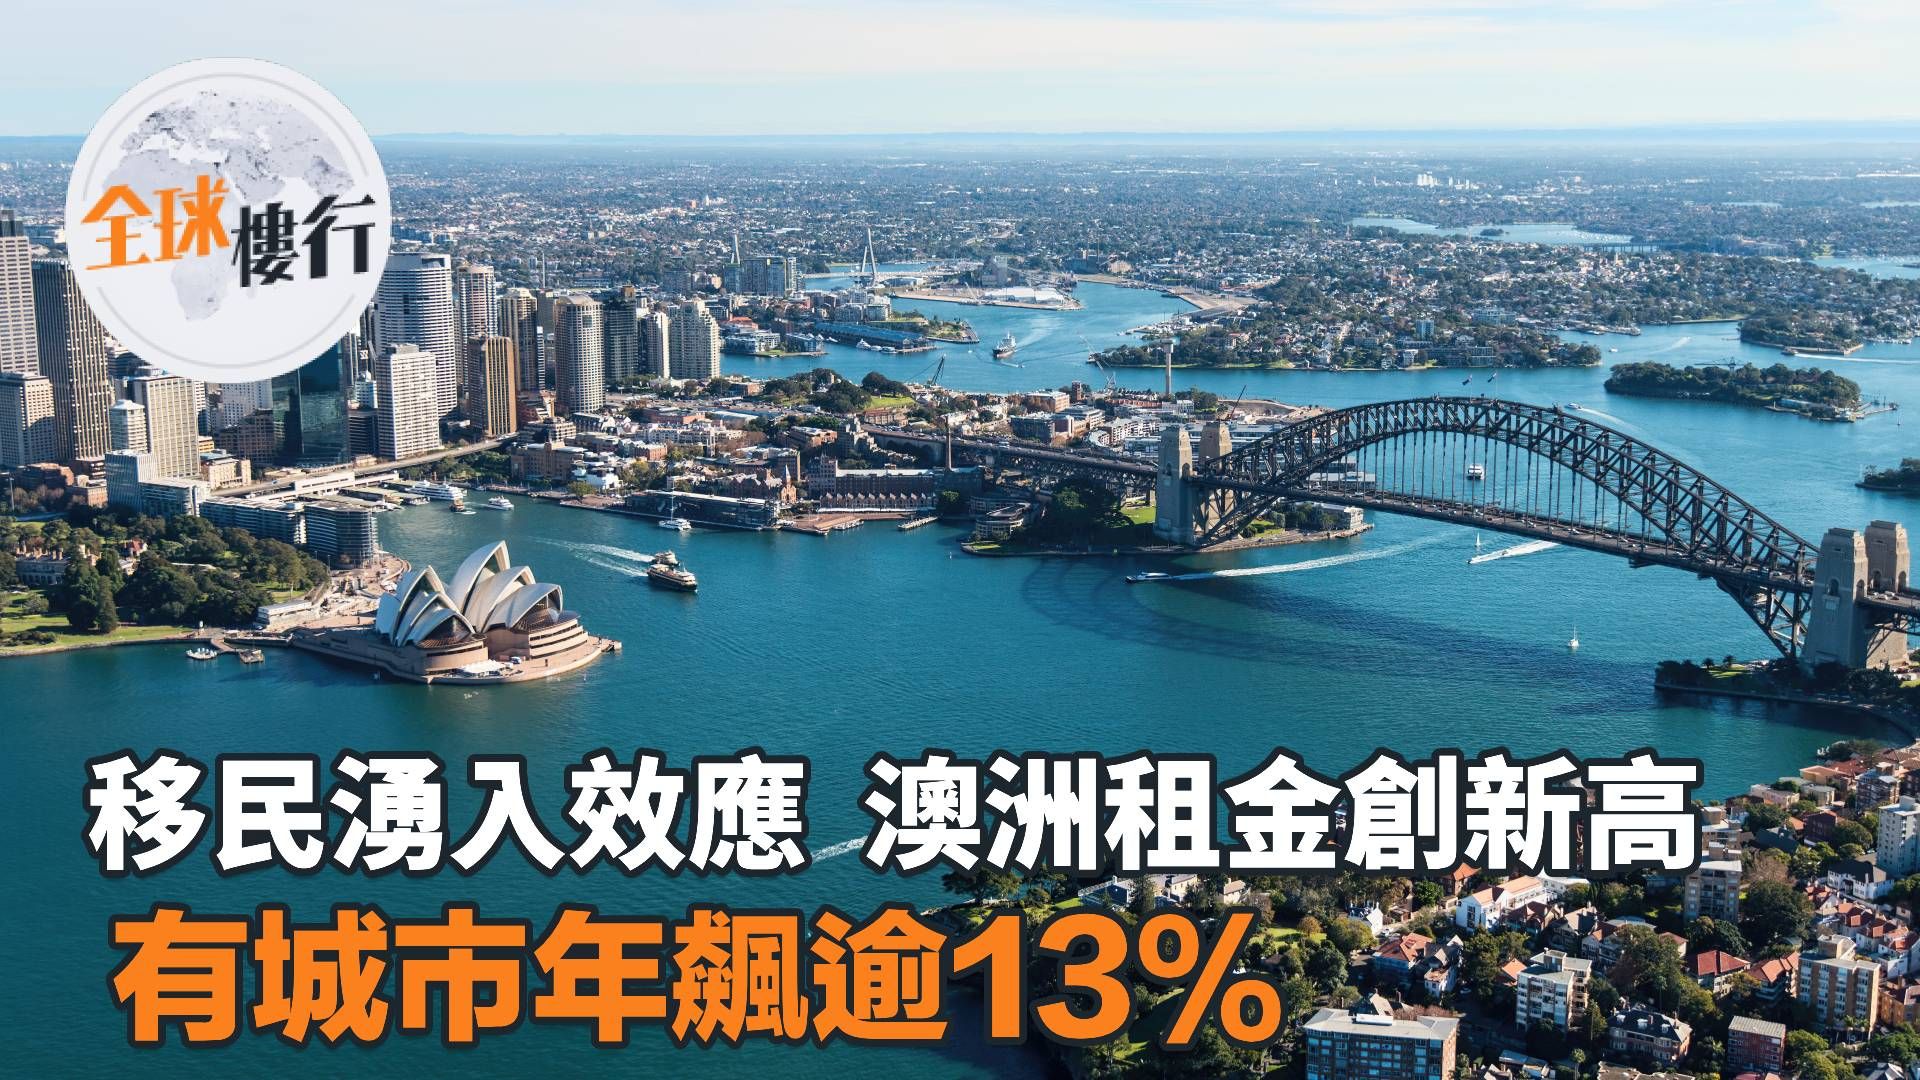 移民湧入效應 澳洲租金創新高 有城市年飆逾13%